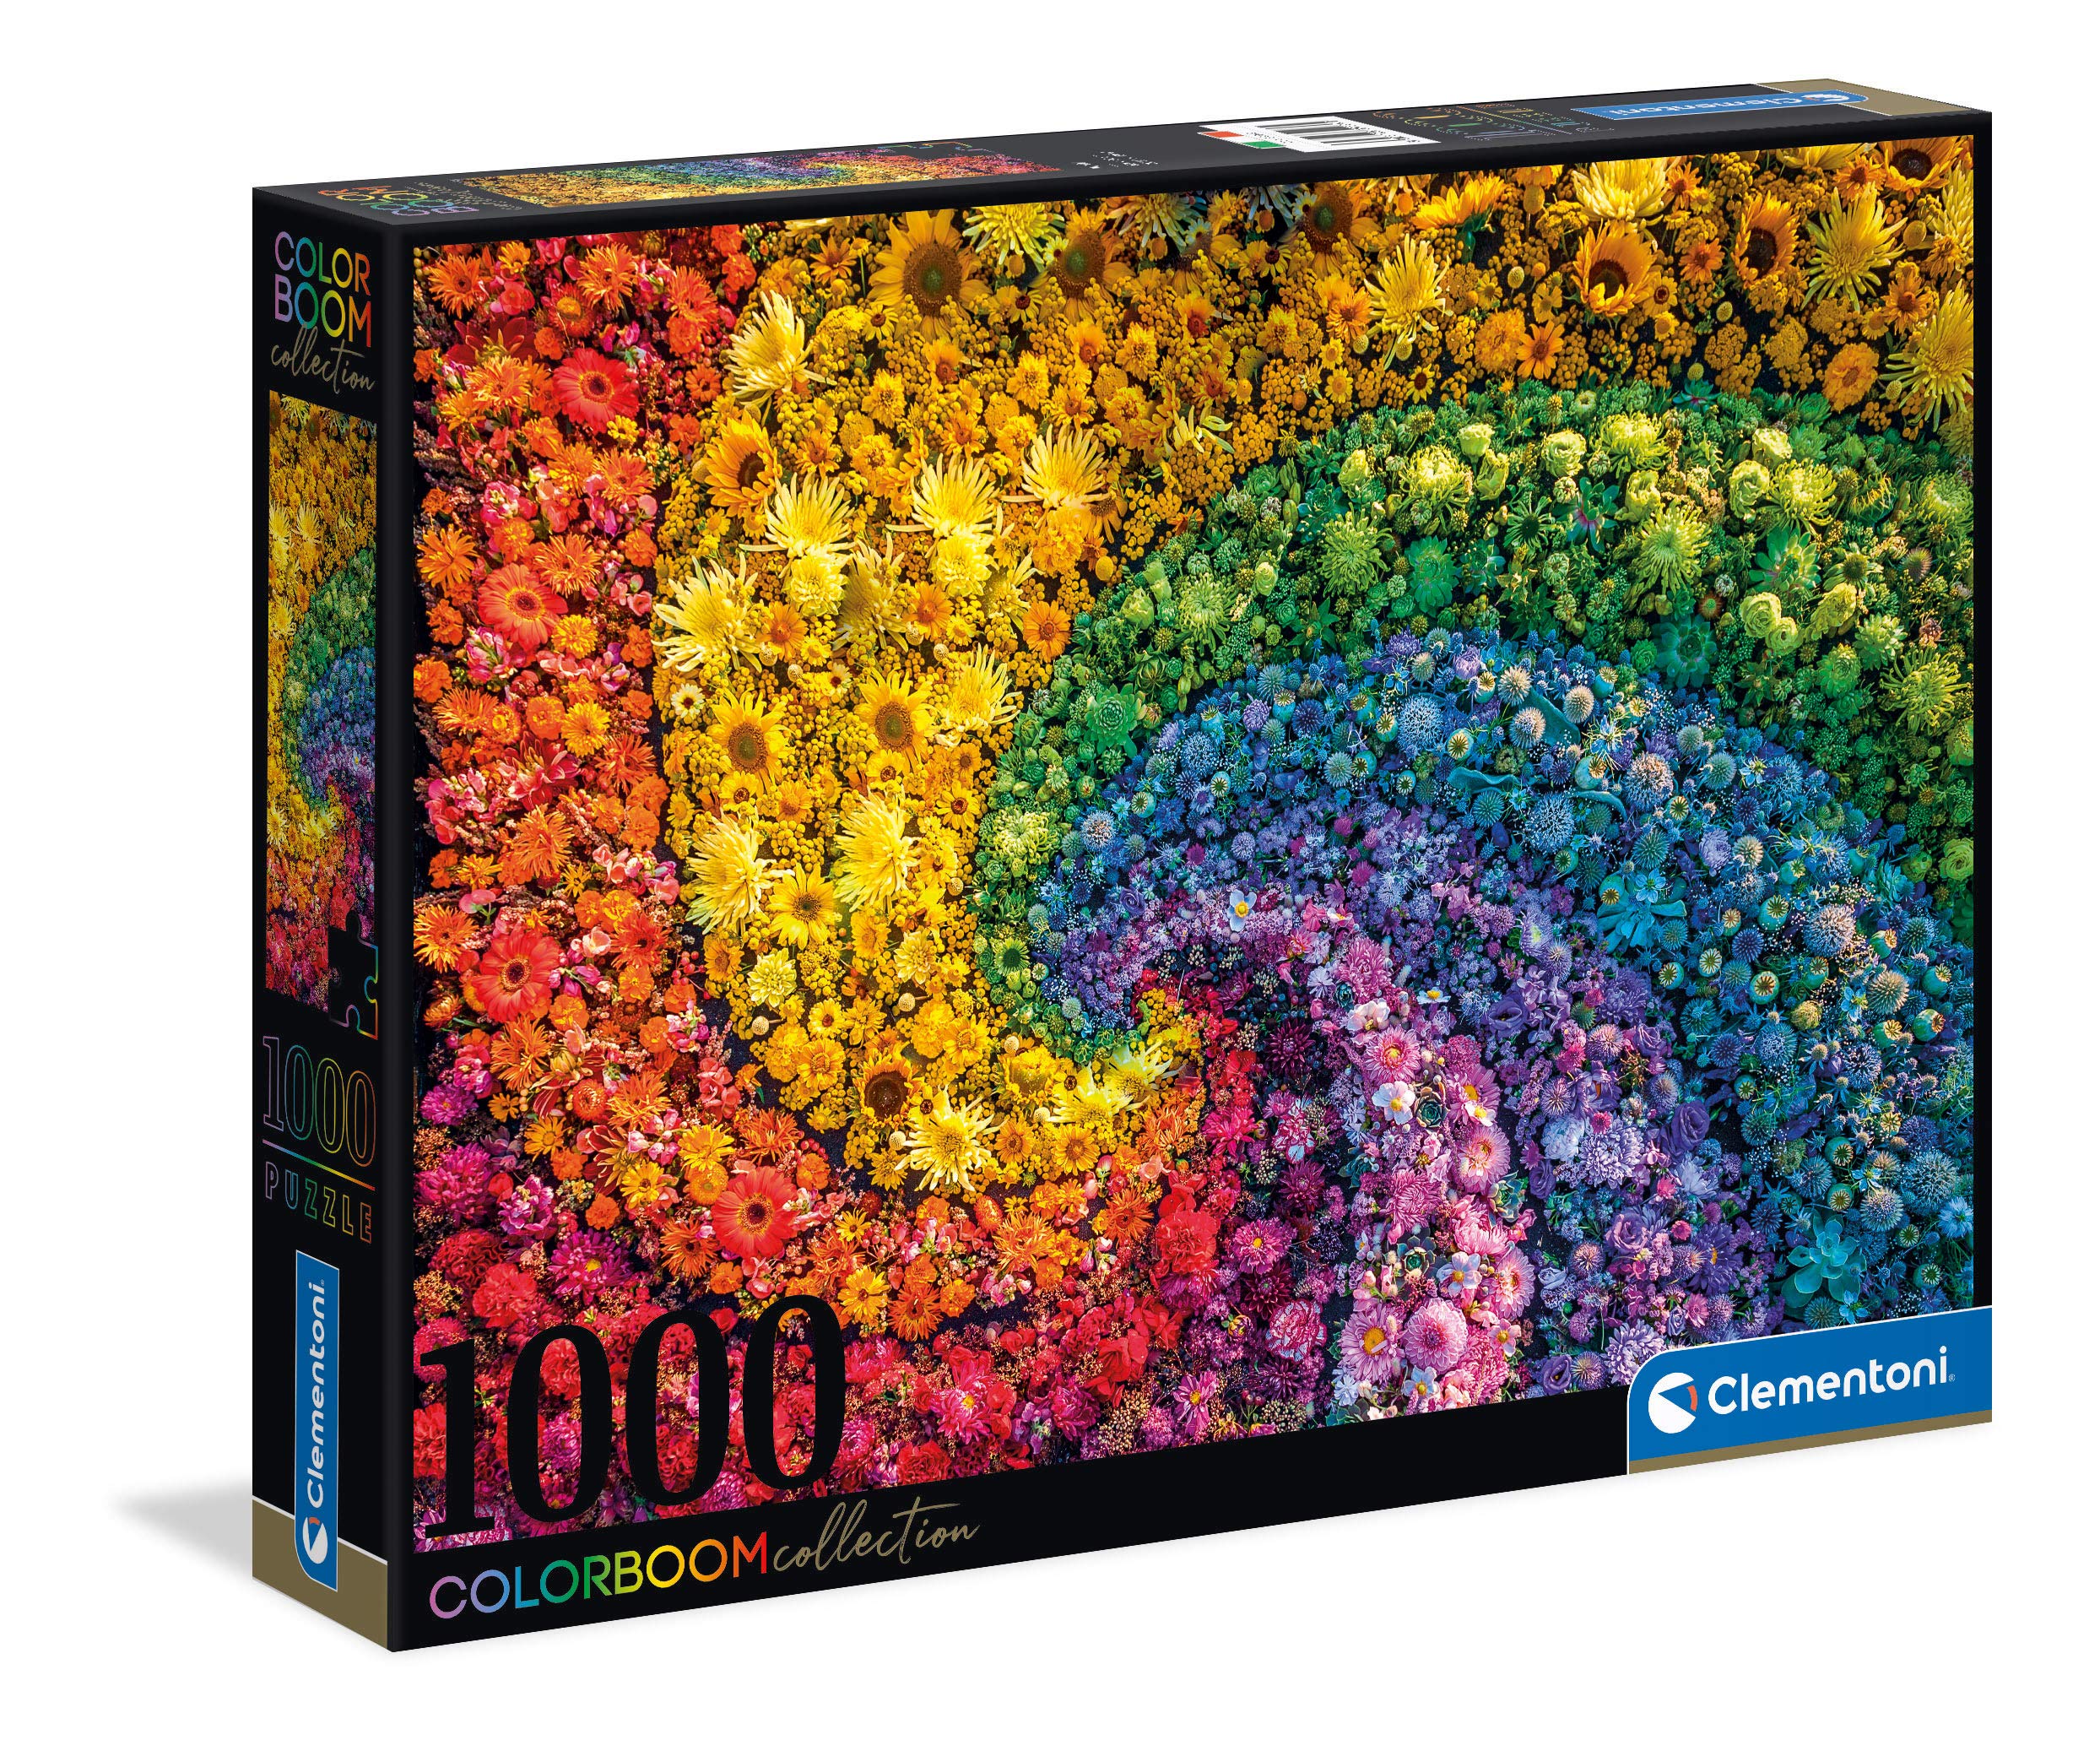 prix de gros Clementoni Colorboom collection-Whirl-1000 pièces Couleurs-Puzzle Adulte-fabriqué en Italie, 39594, No Color p88xO5pwf Boutique